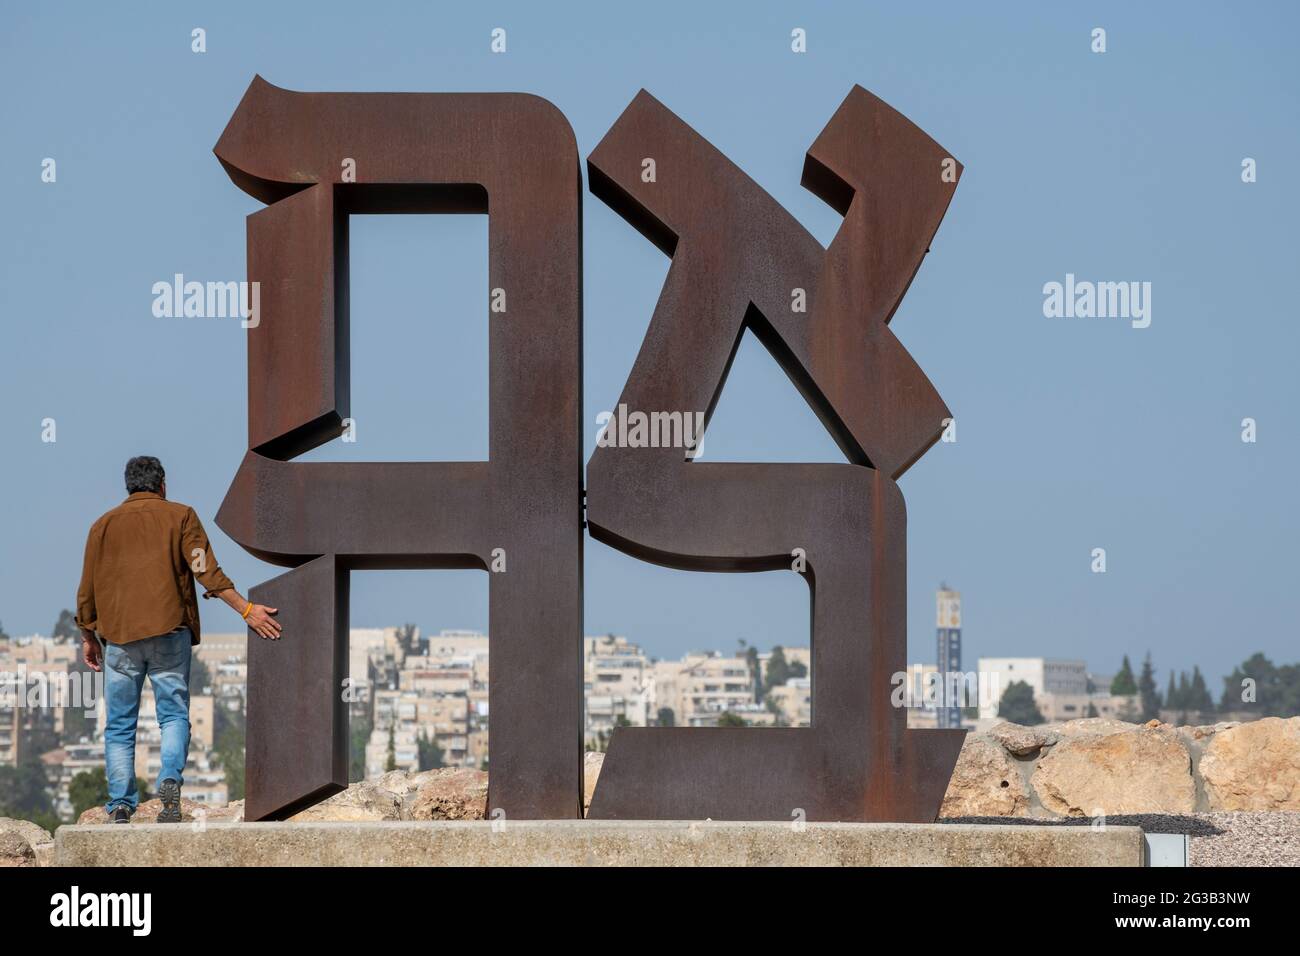 Visitatore israeliano che esplora il famoso AHAVA (amore in ebraico), Cor-ten scultura in acciaio alta 12 metri di Robert Indiana al Museo di Israele. Gerusalemme Foto Stock